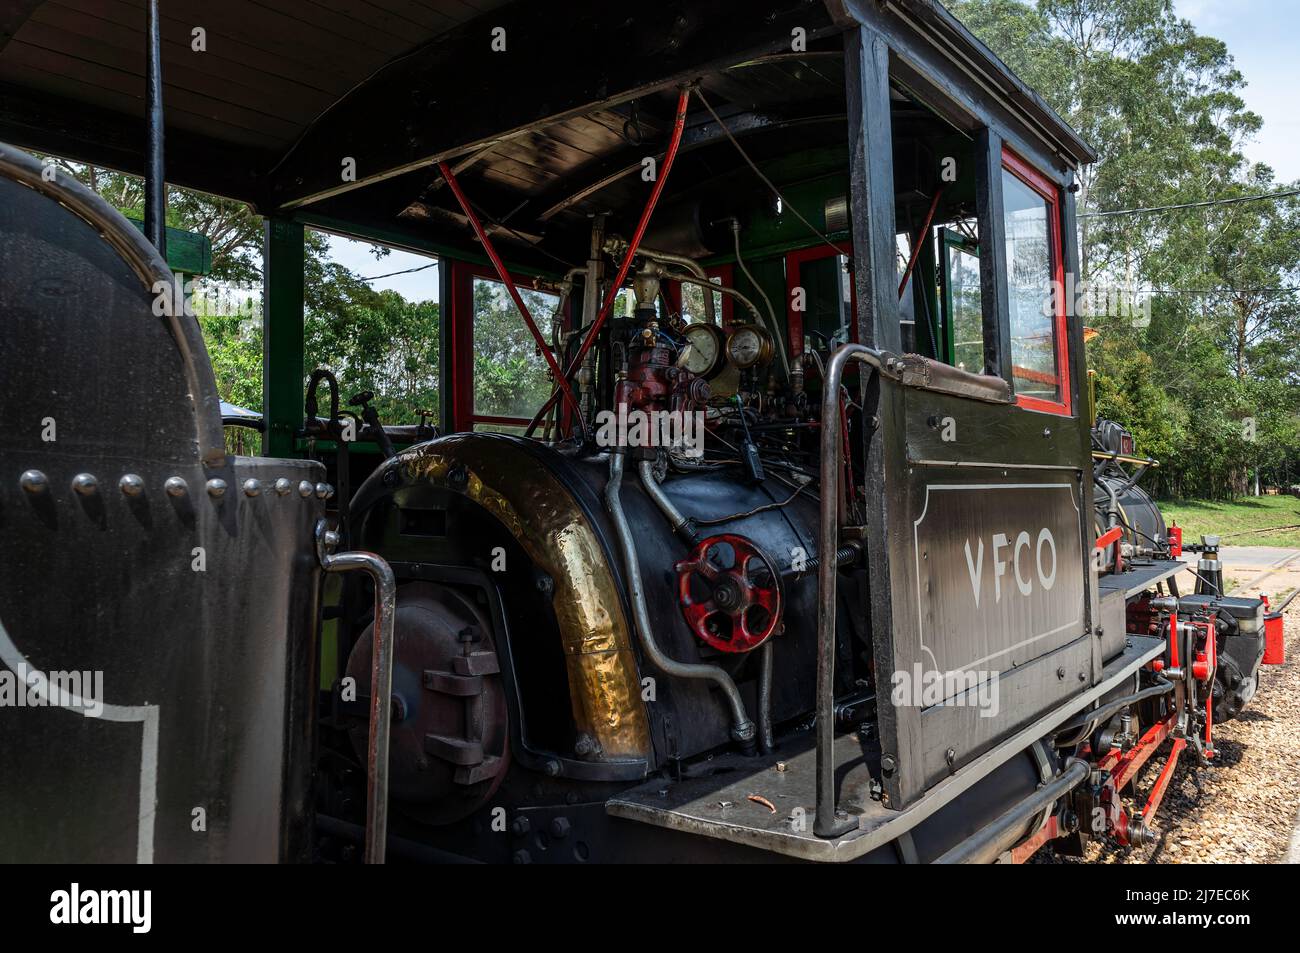 Ampio scatto della locomotiva Baldwin opere n. 38050 valvole interne cabina e manometri mentre si ferma alla stazione ferroviaria di Tiradentes. Foto Stock